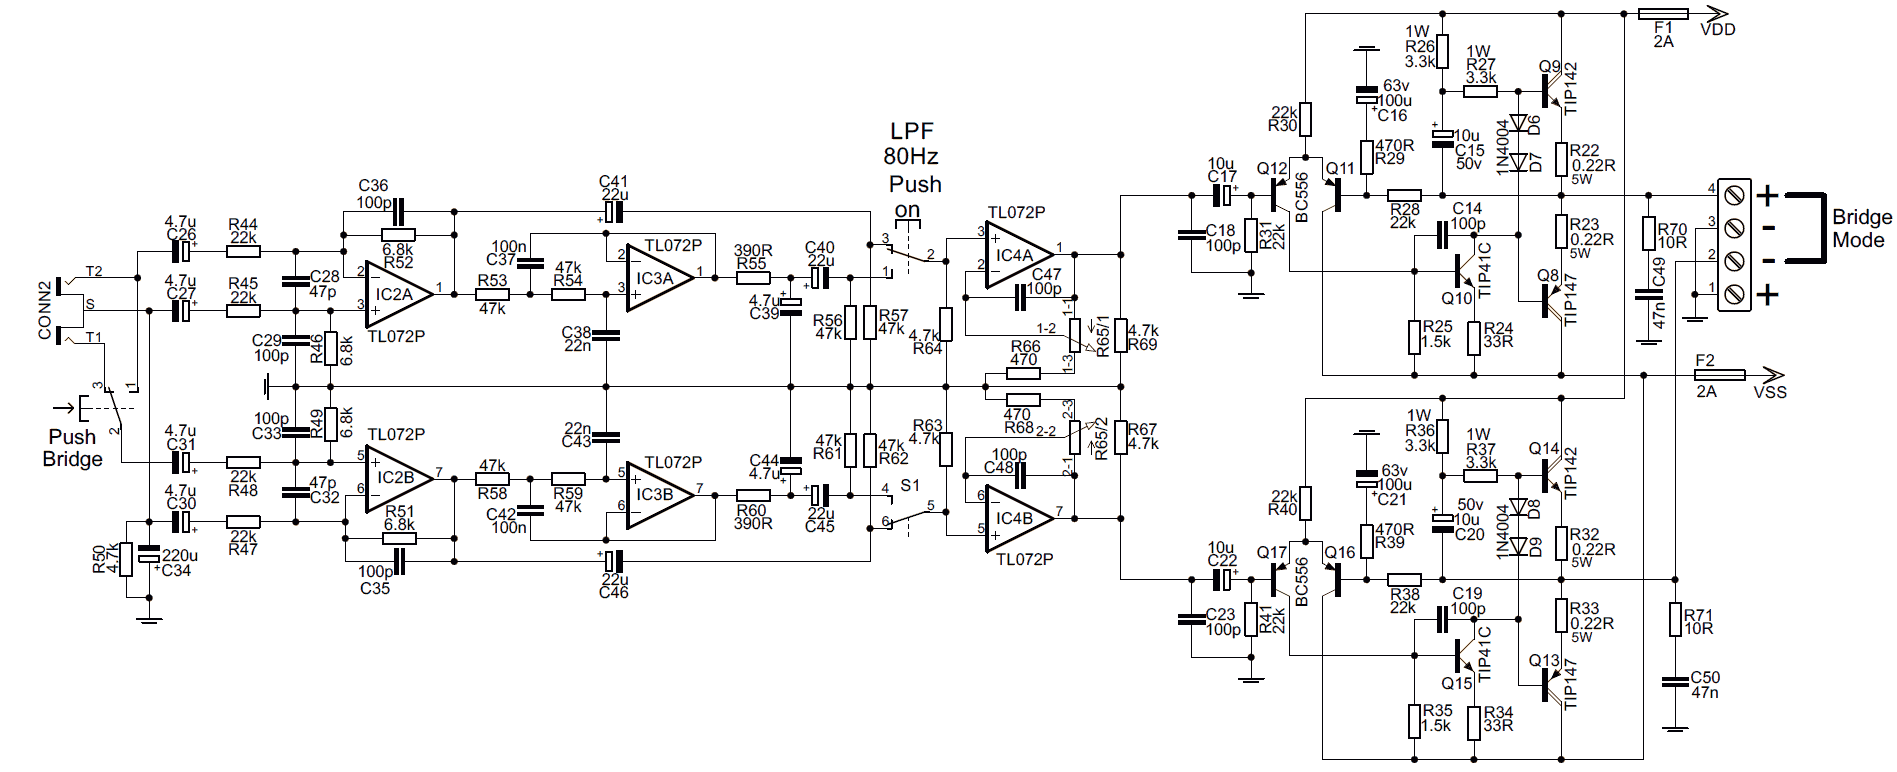 Car Amplifier Circuit Tip142 Tip147 200w Dc Dc Tl494 Ei33